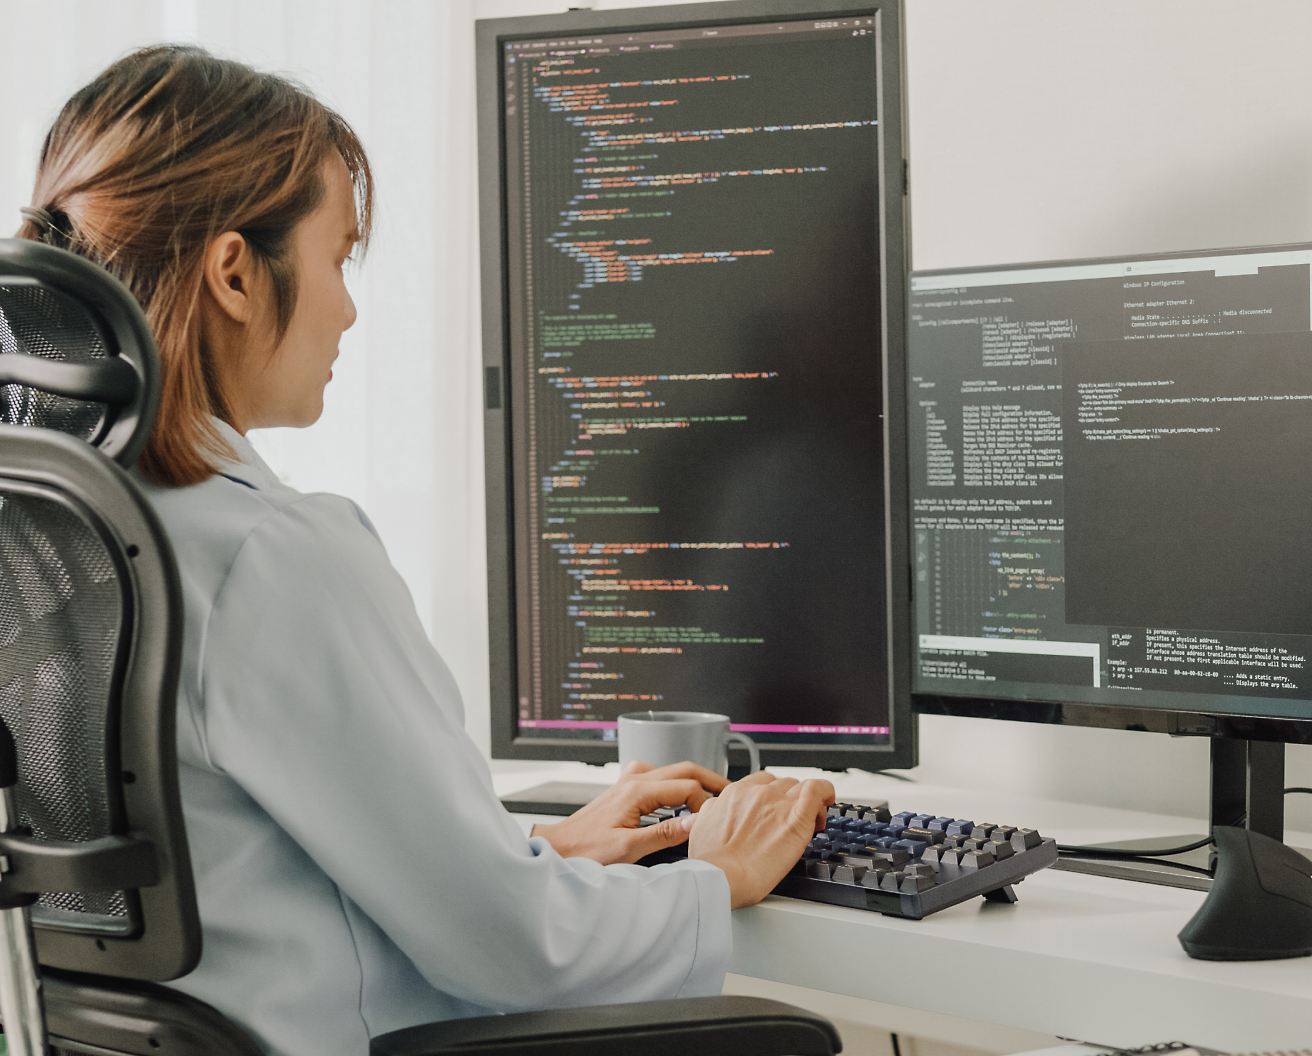 Egy irodai széken ülő nő, aki egy számítógépen kódol egy több képernyős kijelzőt használva, amelyen programozási kód látható.